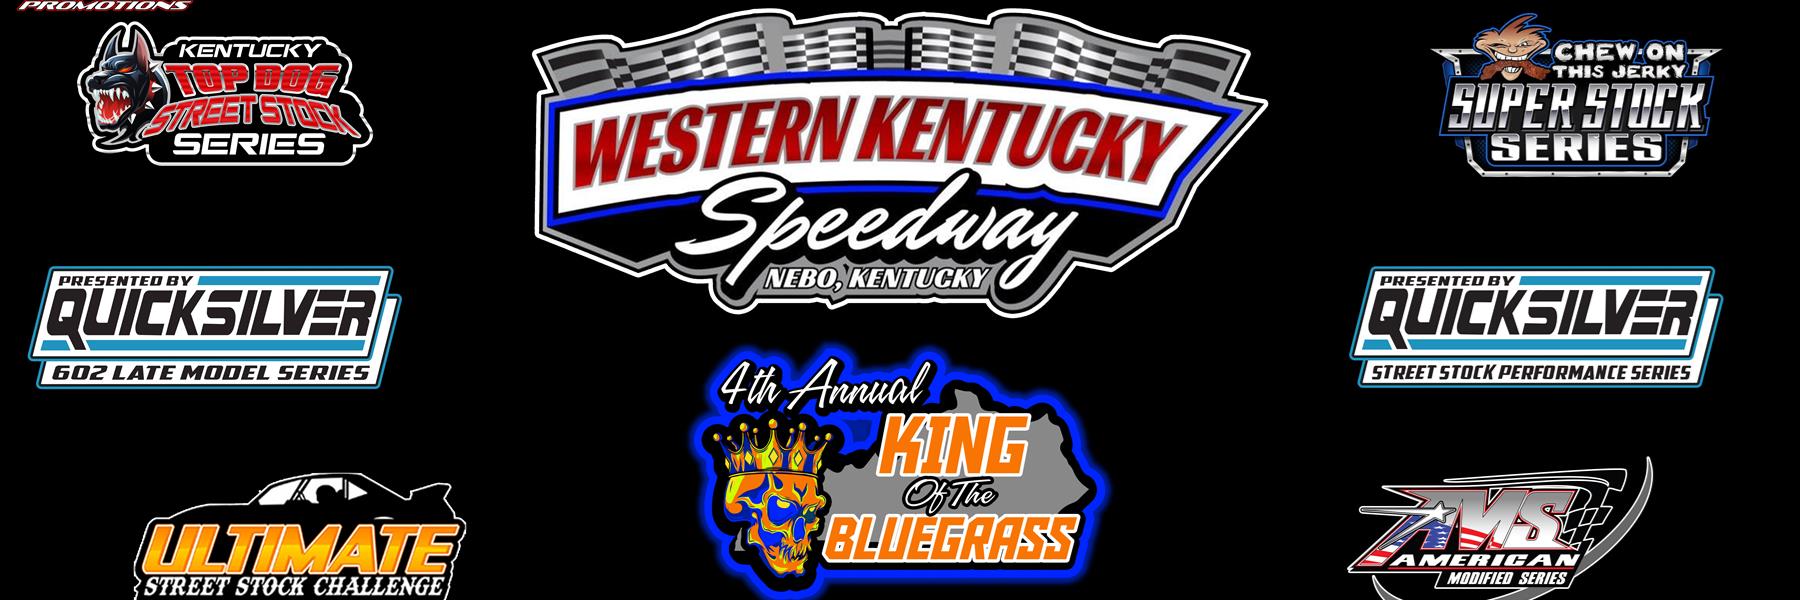 8/20/2022 - Western Kentucky Speedway